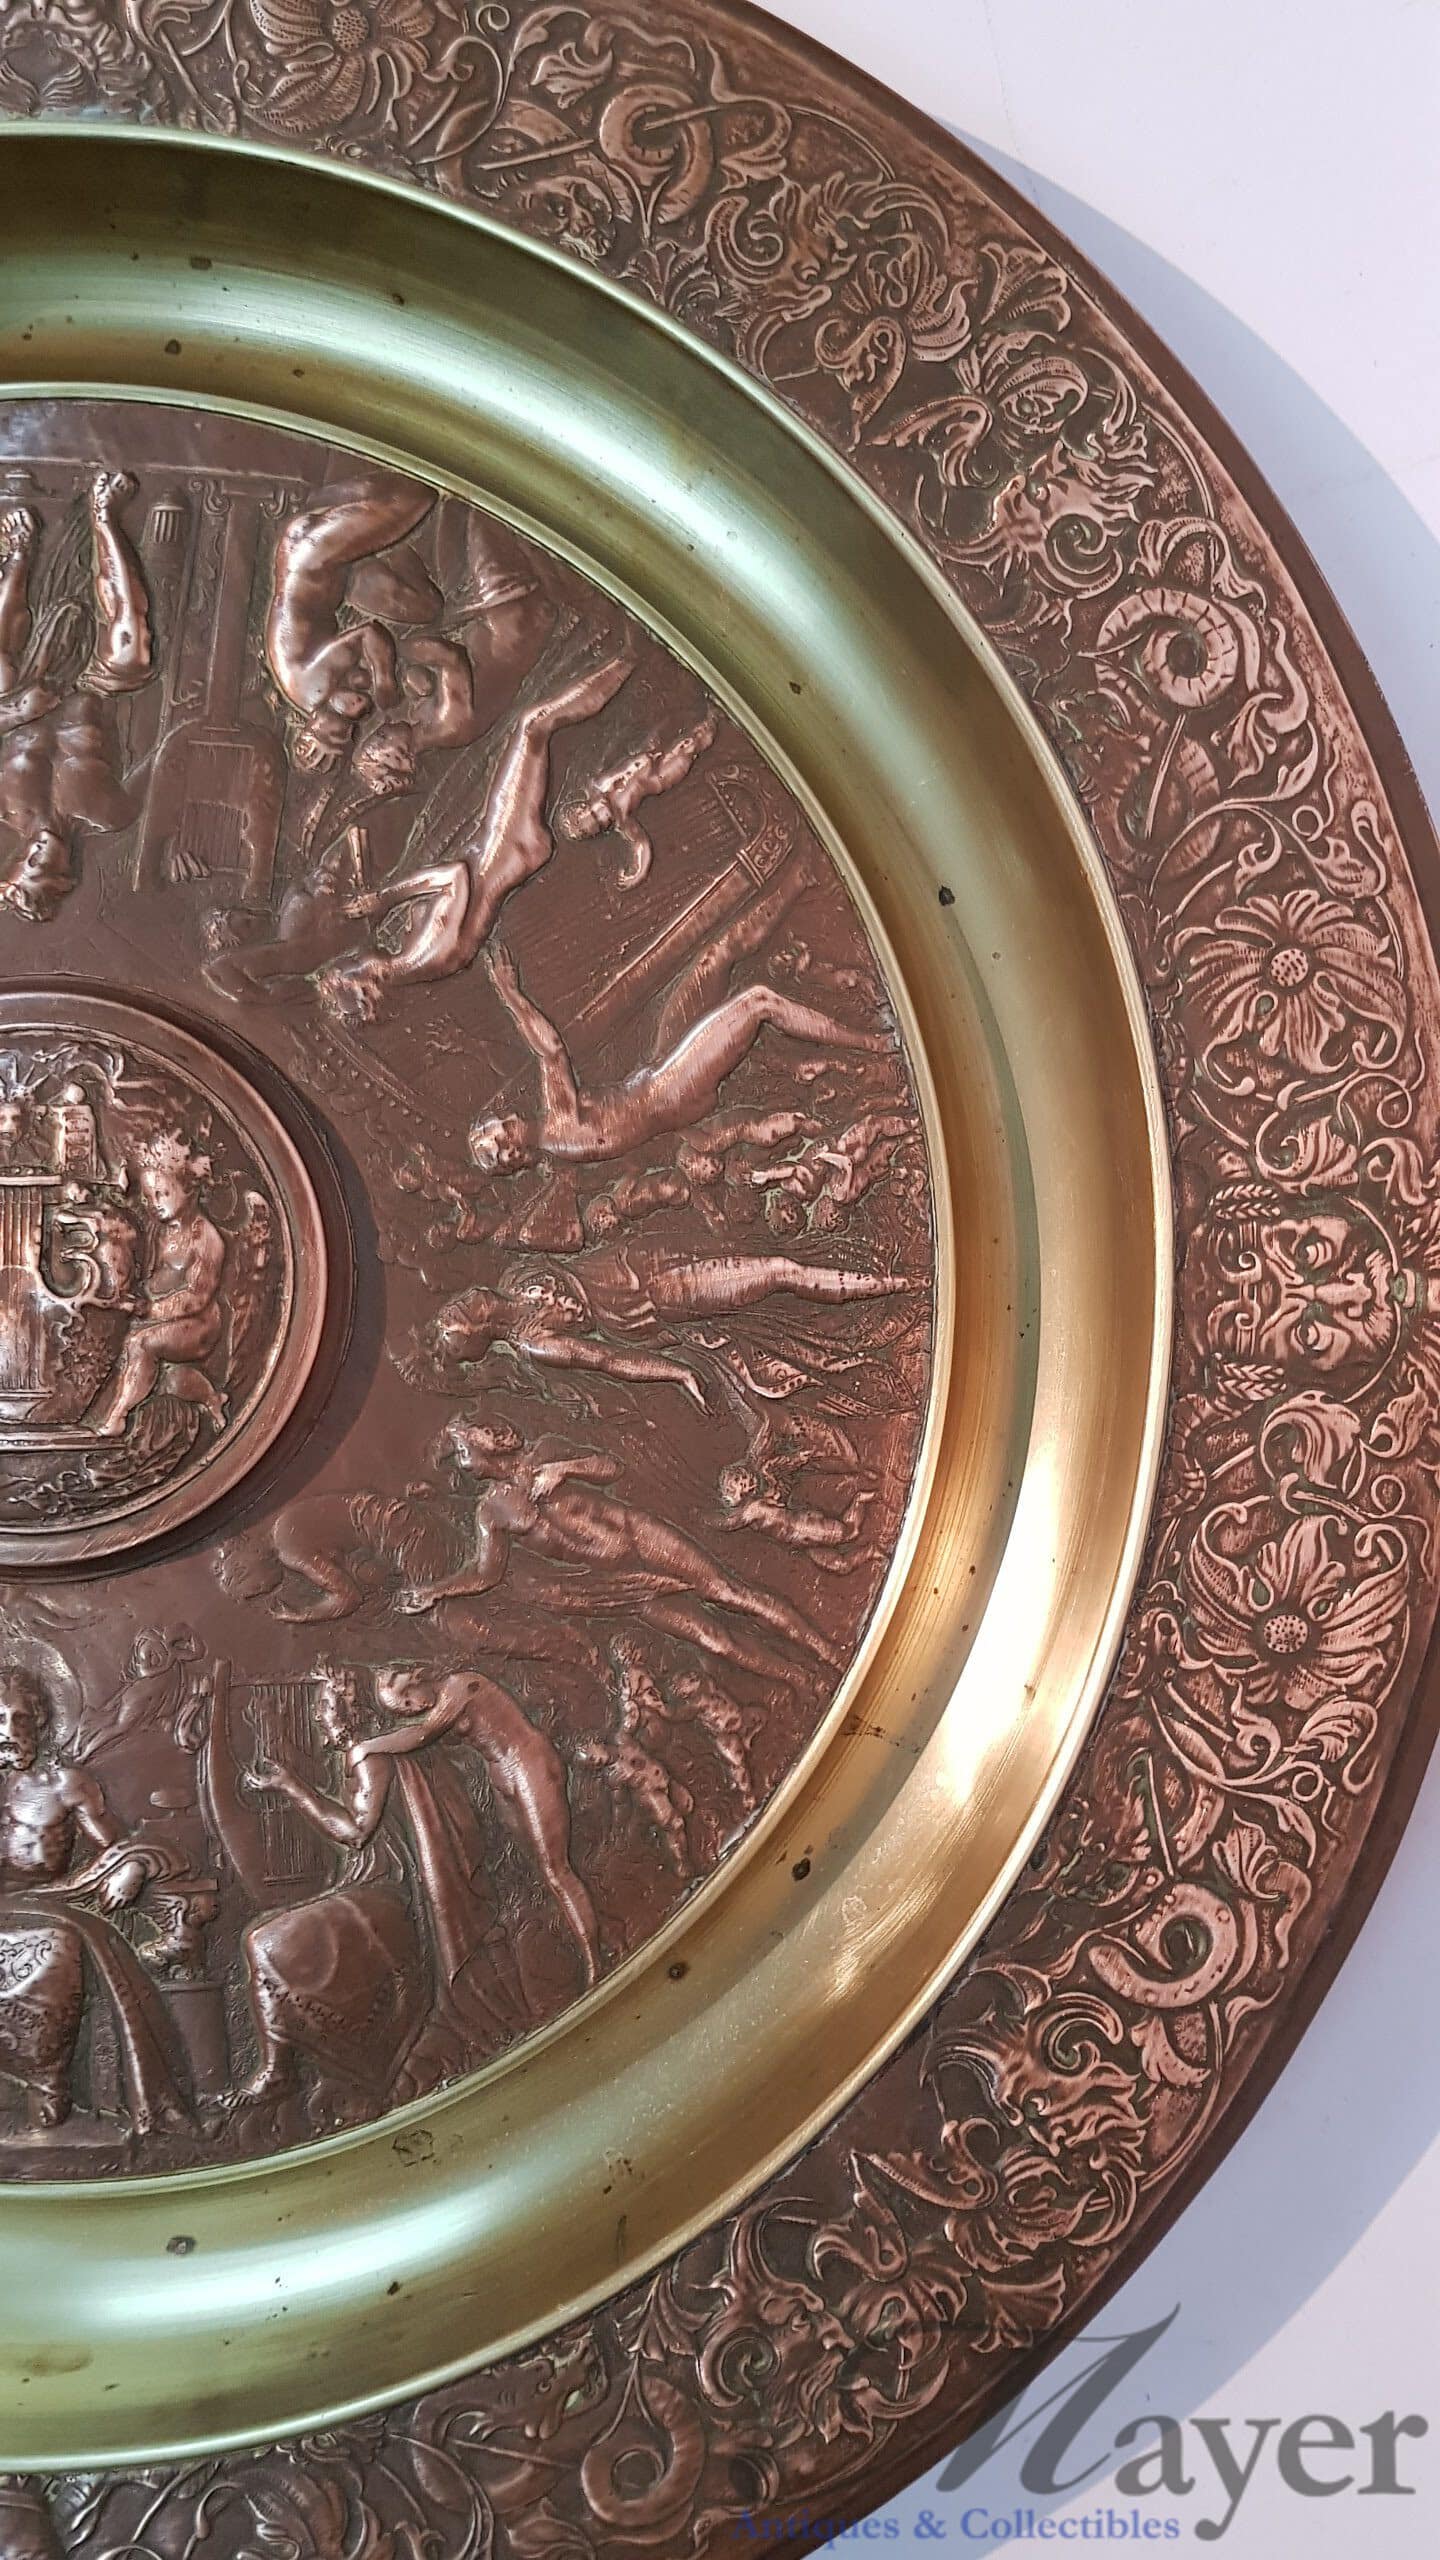 Greek Mythology Copper Plate - Vintage Copper plates